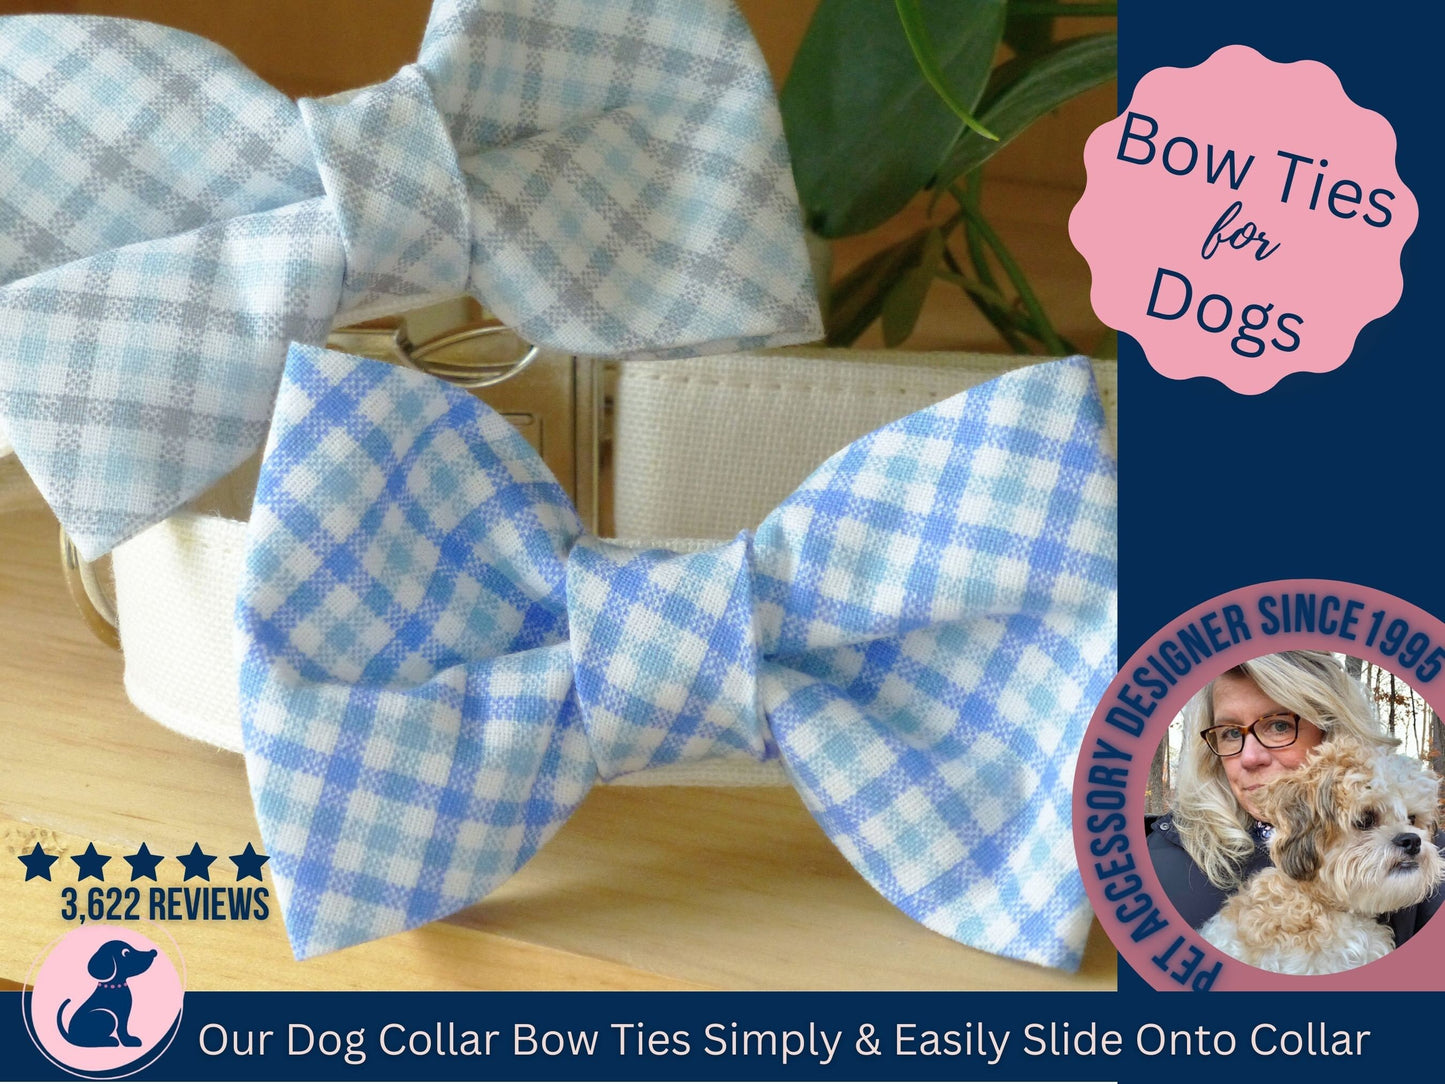 Boy Dog Bow Tie - Plaid Blue, Plaid Gray